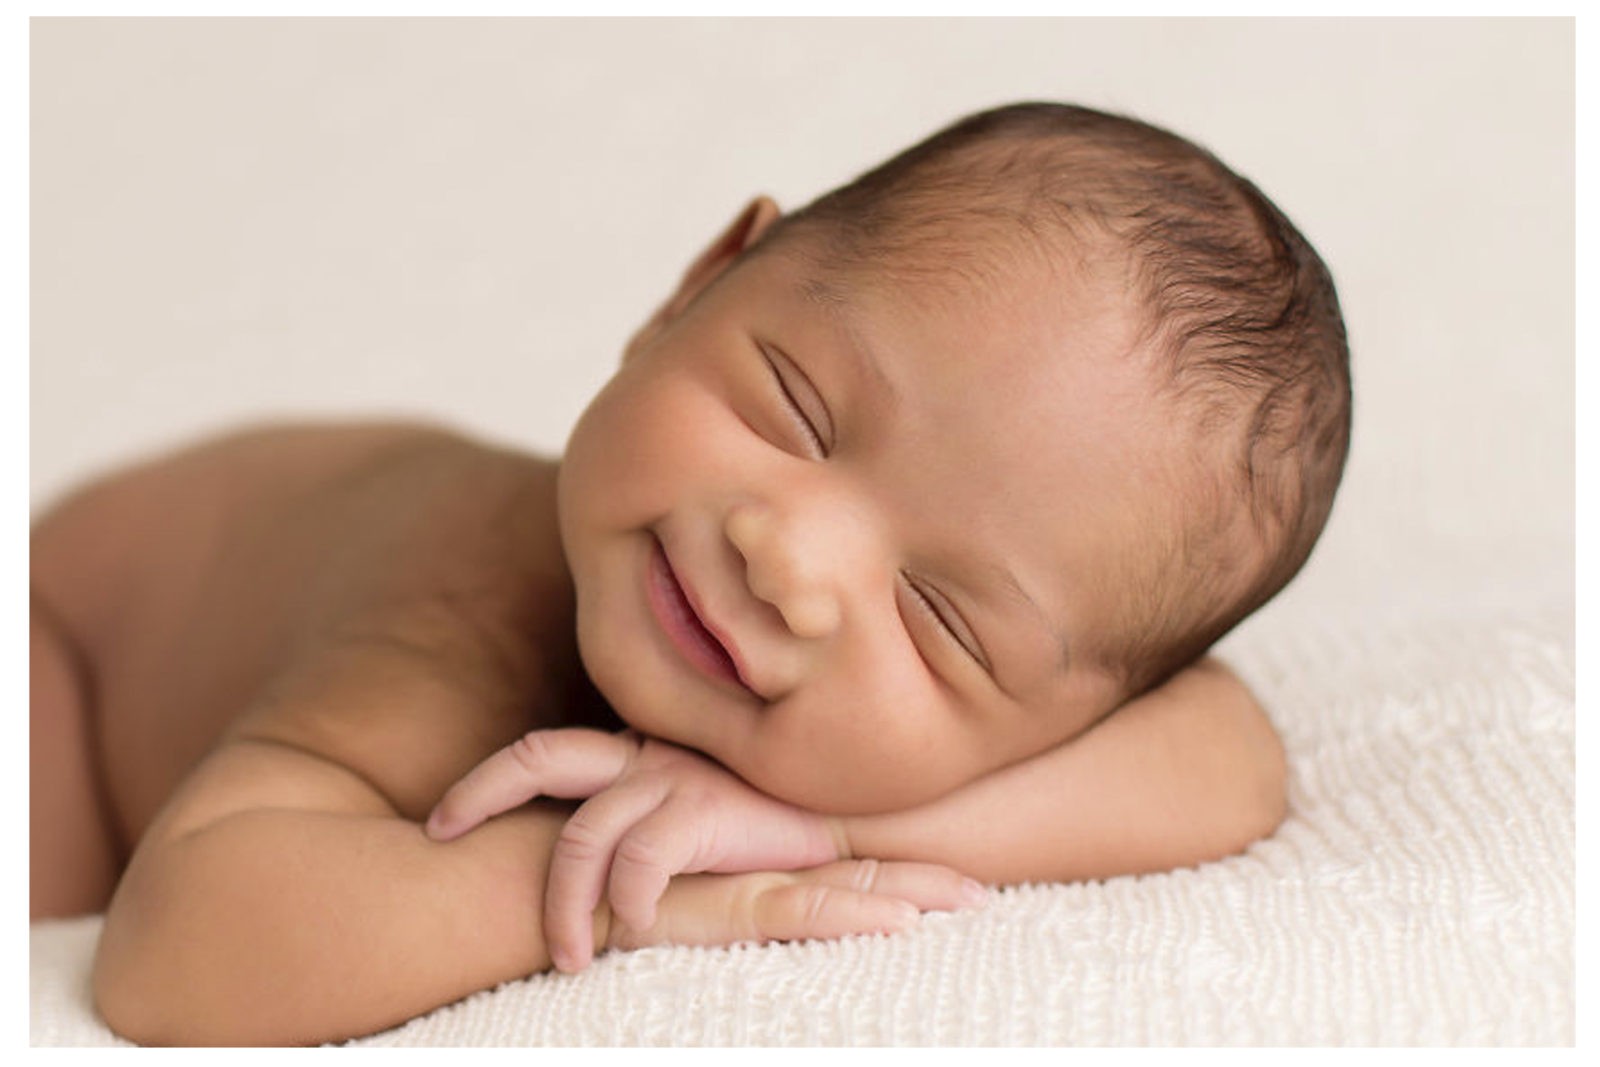 Rebyonok. Новорожденный ребенок. Малыш улыбается. Спящие малыши. Спящий младенец.